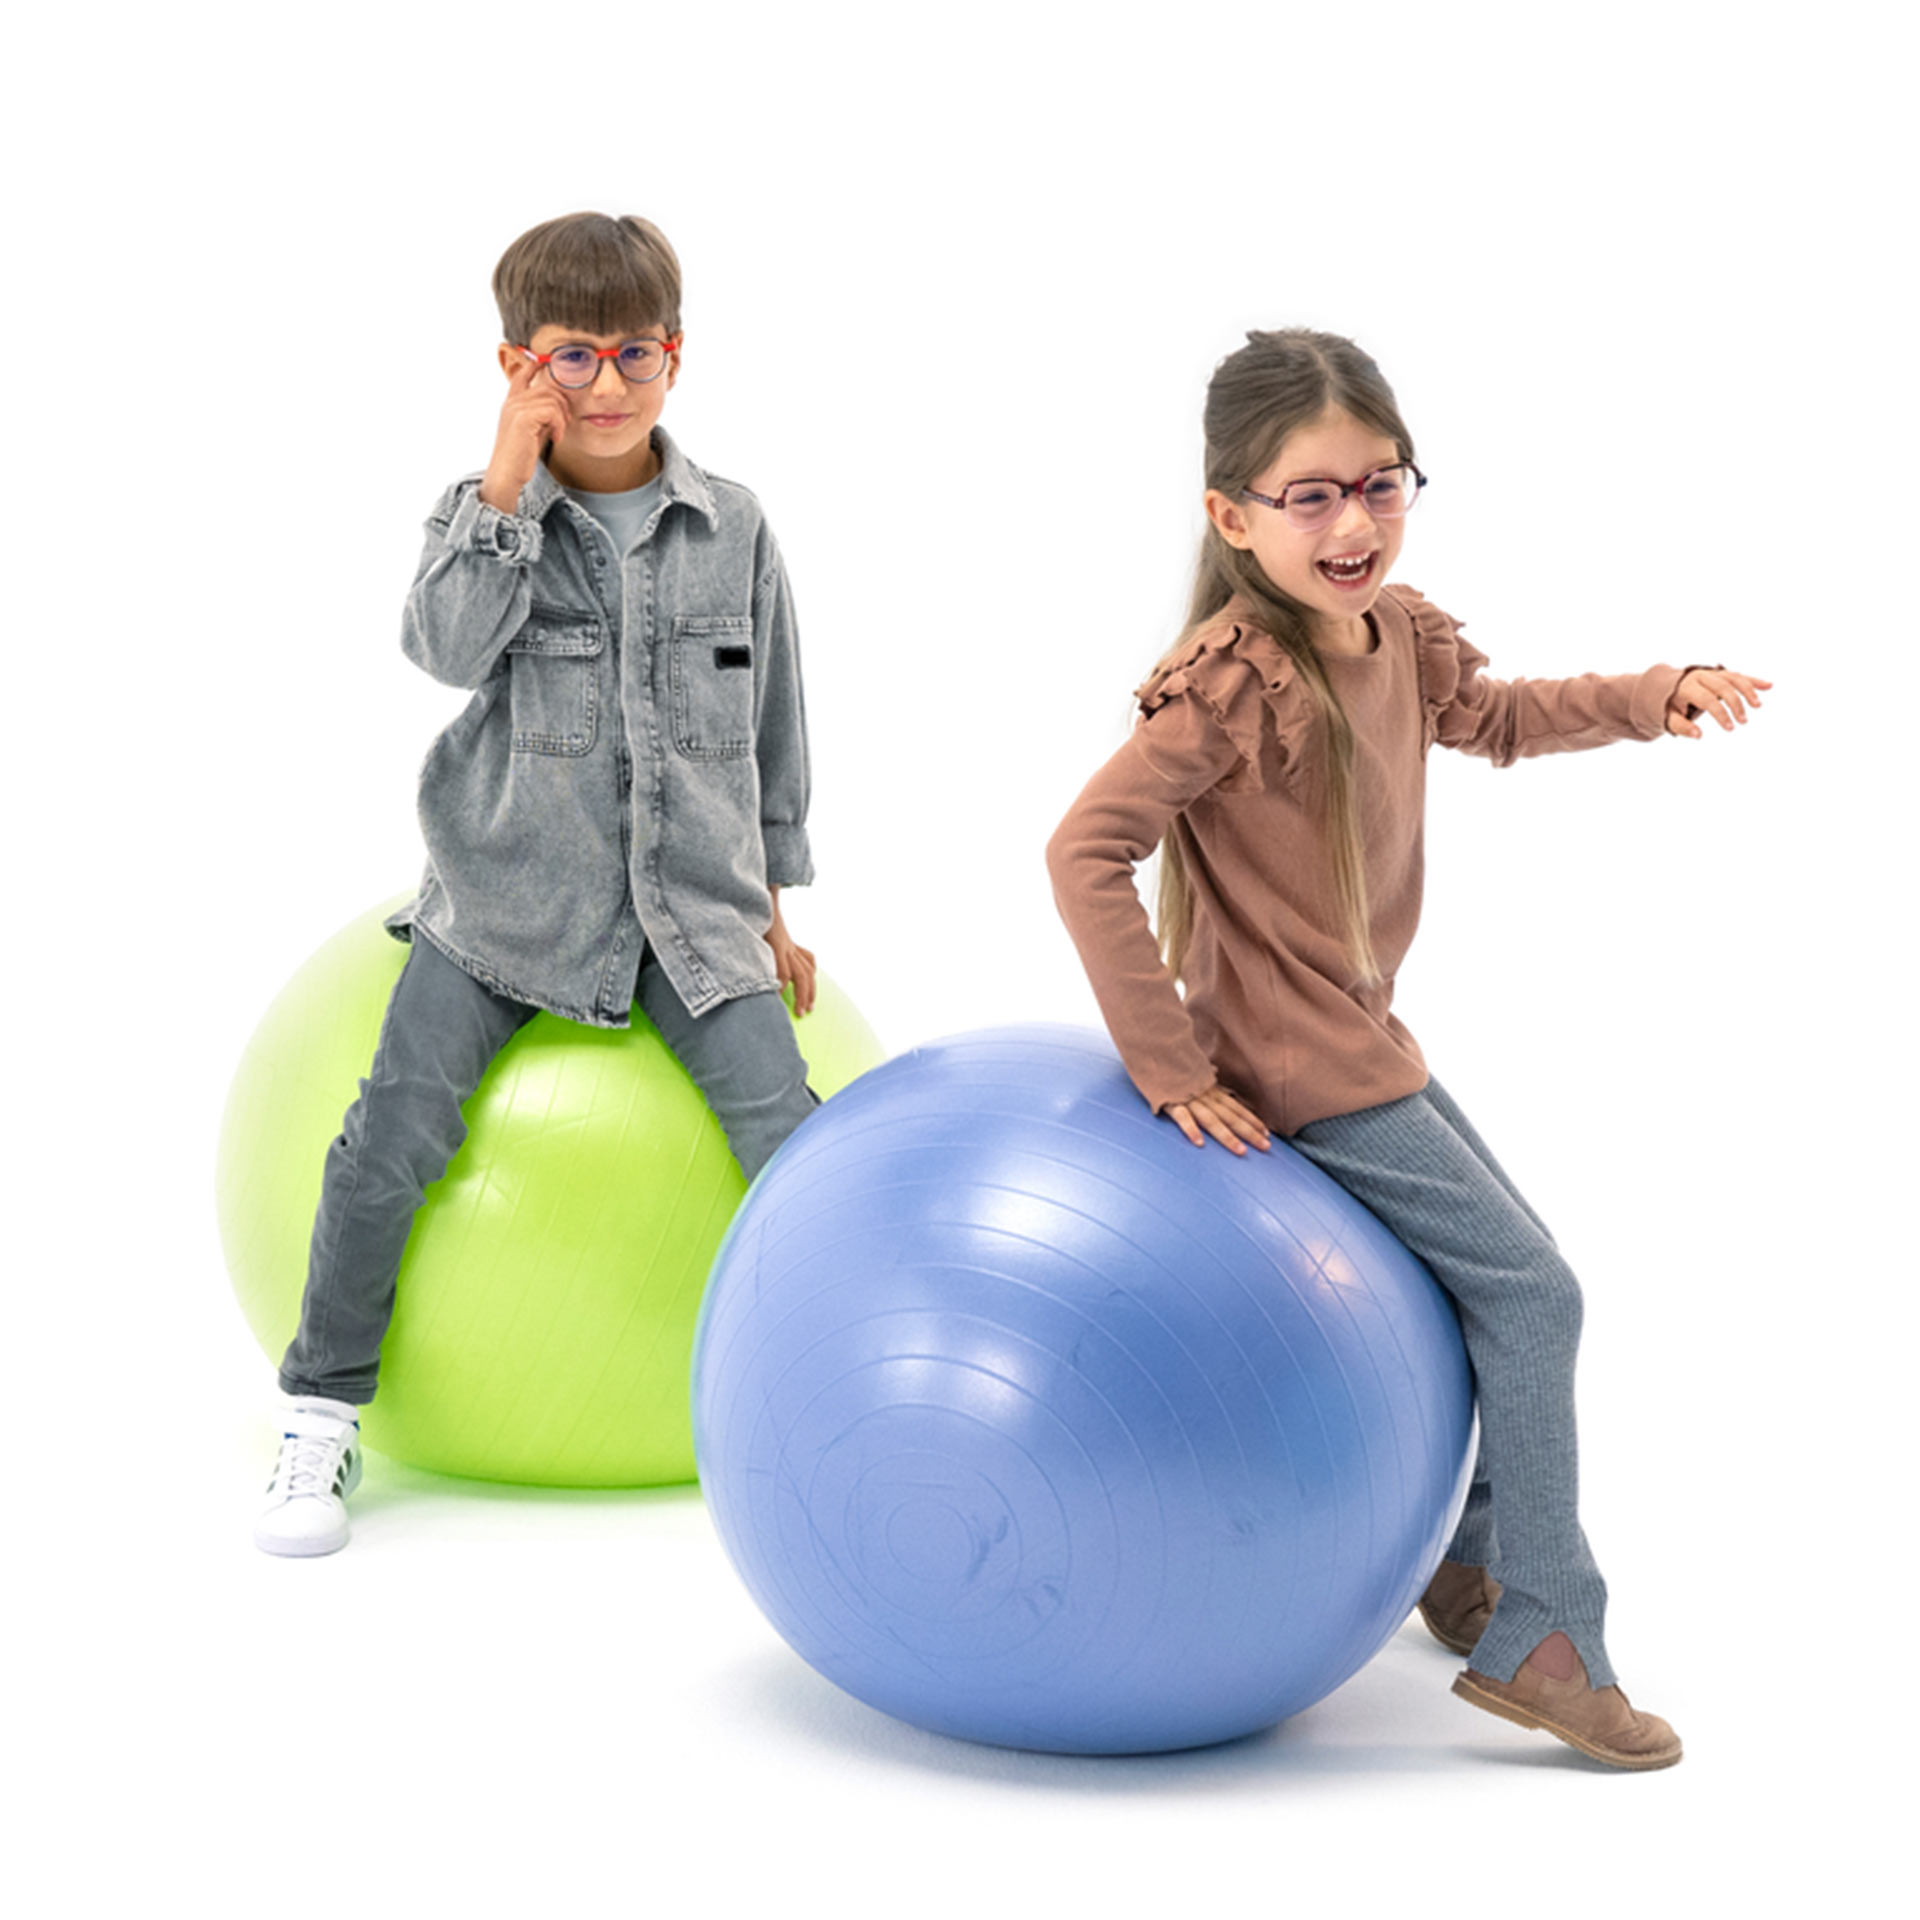 Een jongen en een meisje, die beiden een bril dragen, stuiteren speels op gymballen.